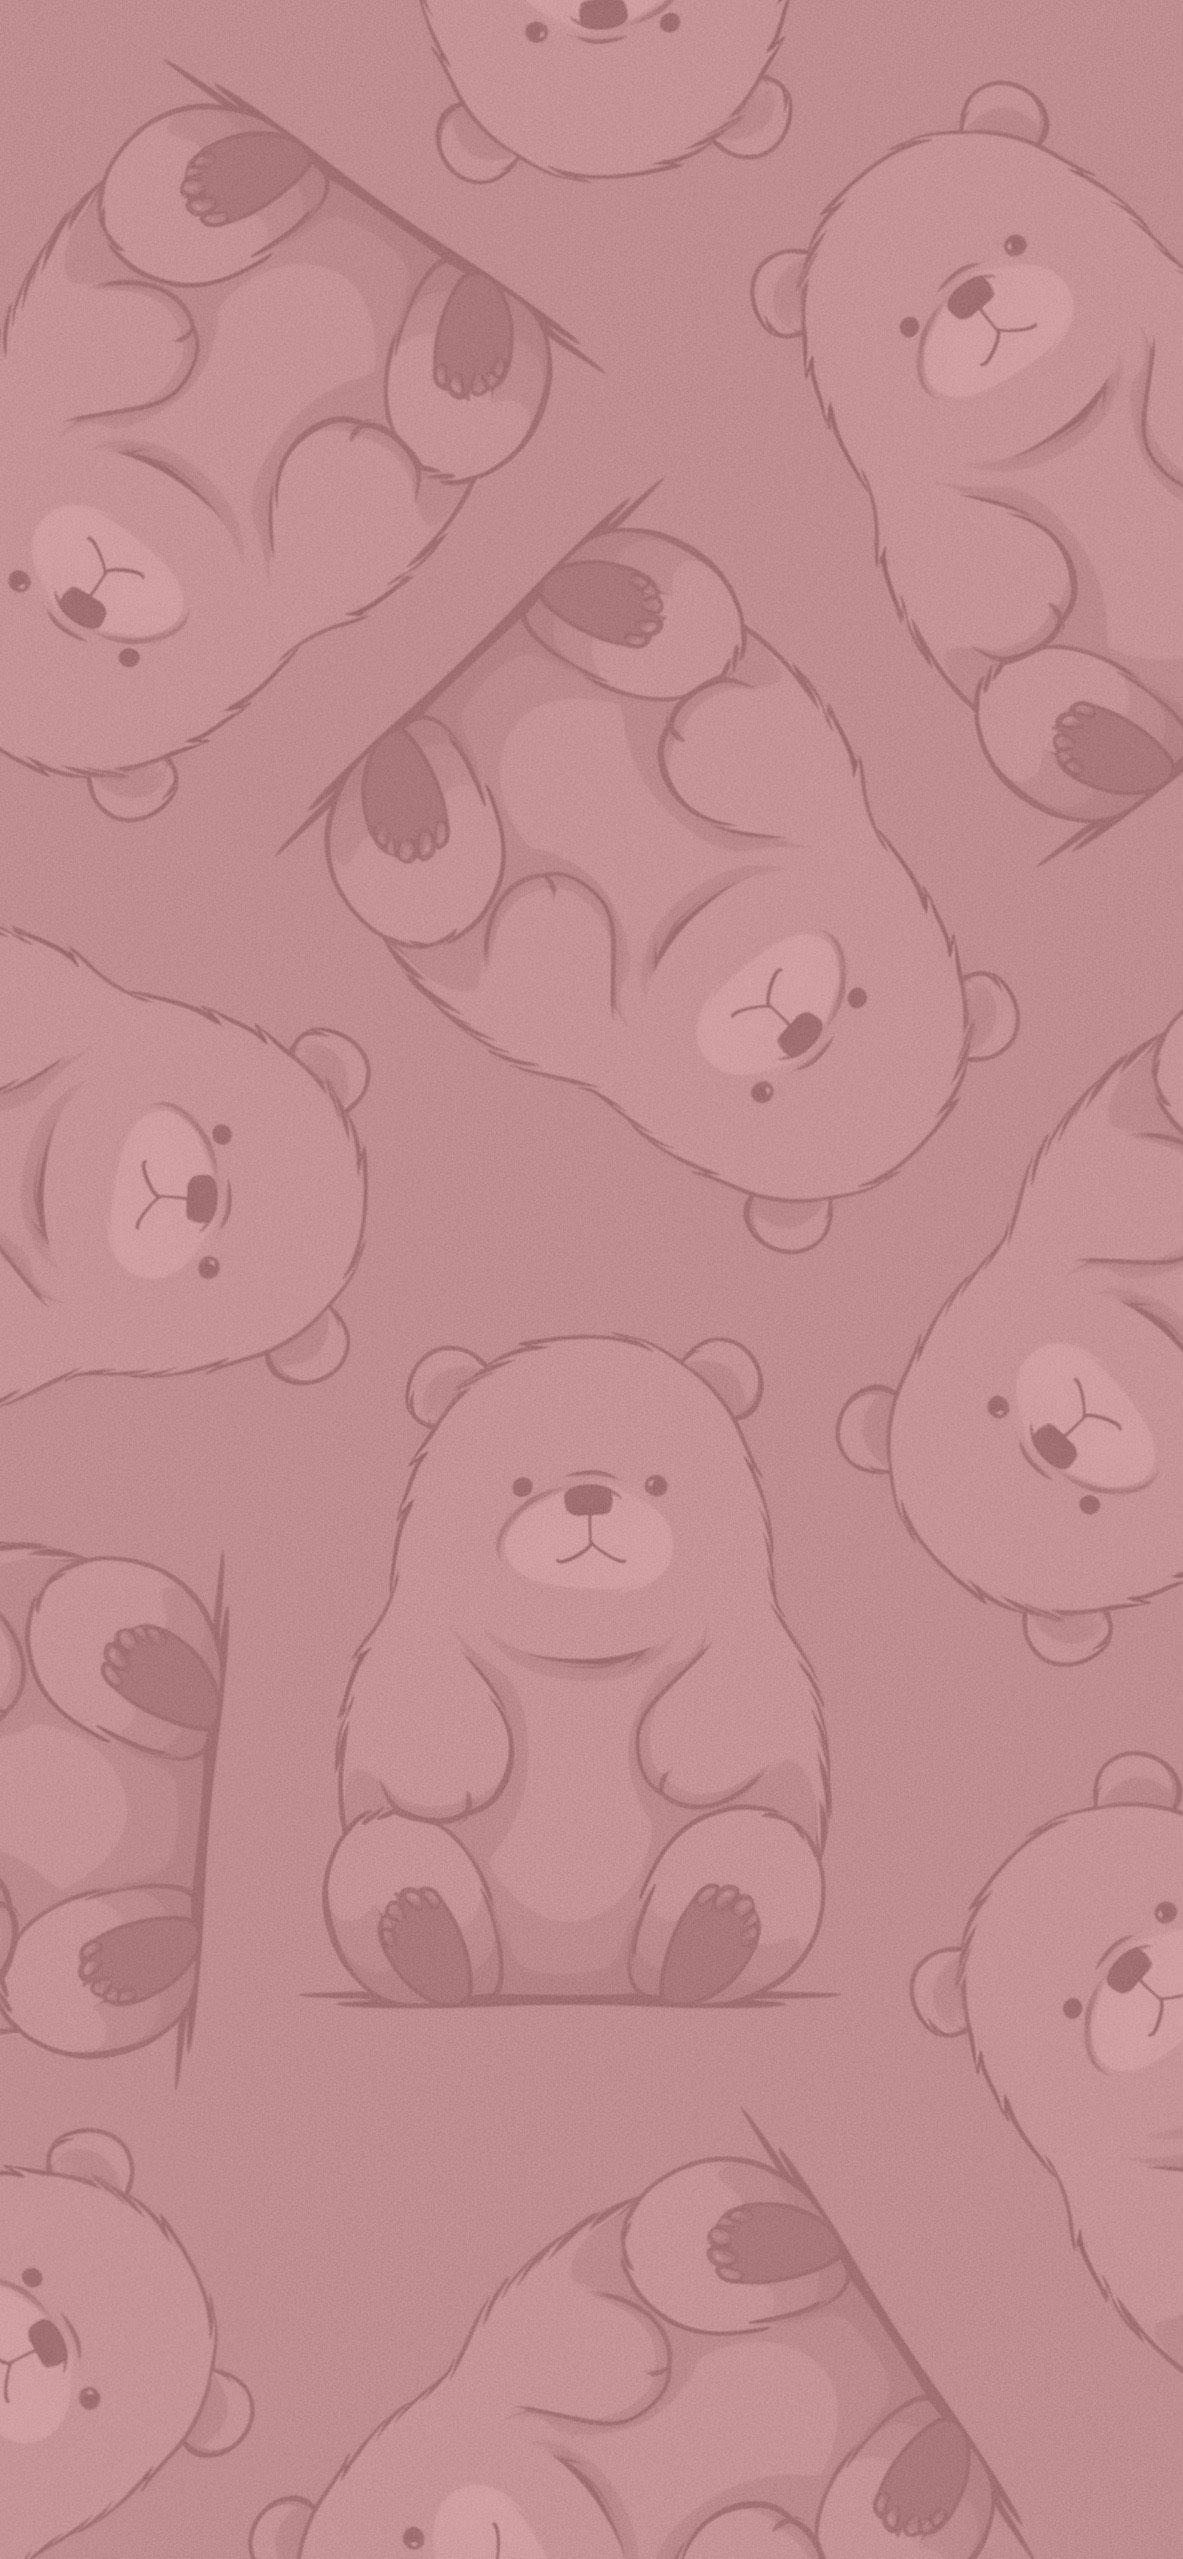 [49+] Cute Brown Bear Wallpapers | WallpaperSafari